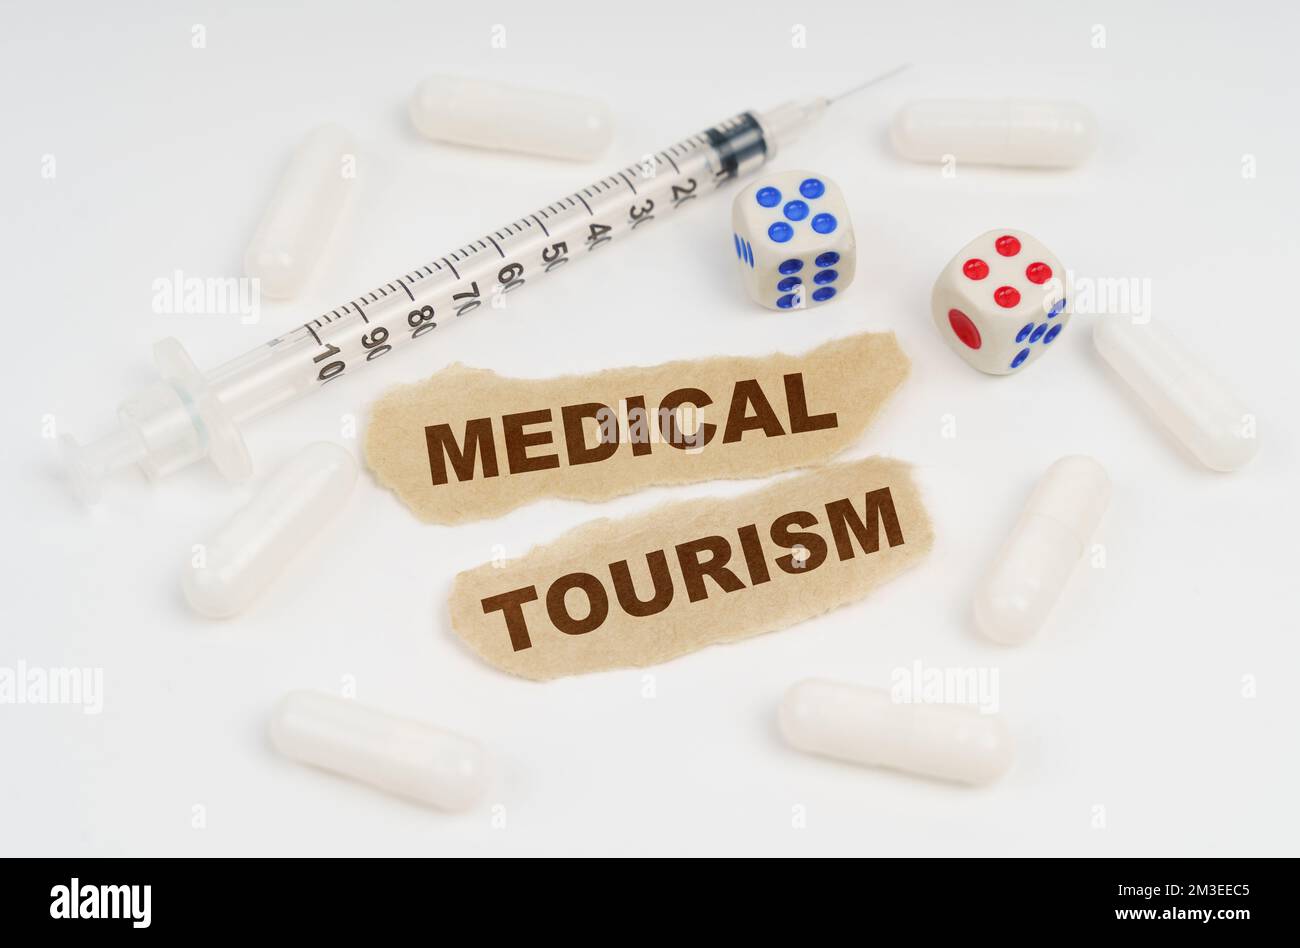 Concept médical. Sur une surface blanche se trouve une seringue, des pilules, des dés et des morceaux de papier avec l'inscription - MEDICAL TOURISM Banque D'Images